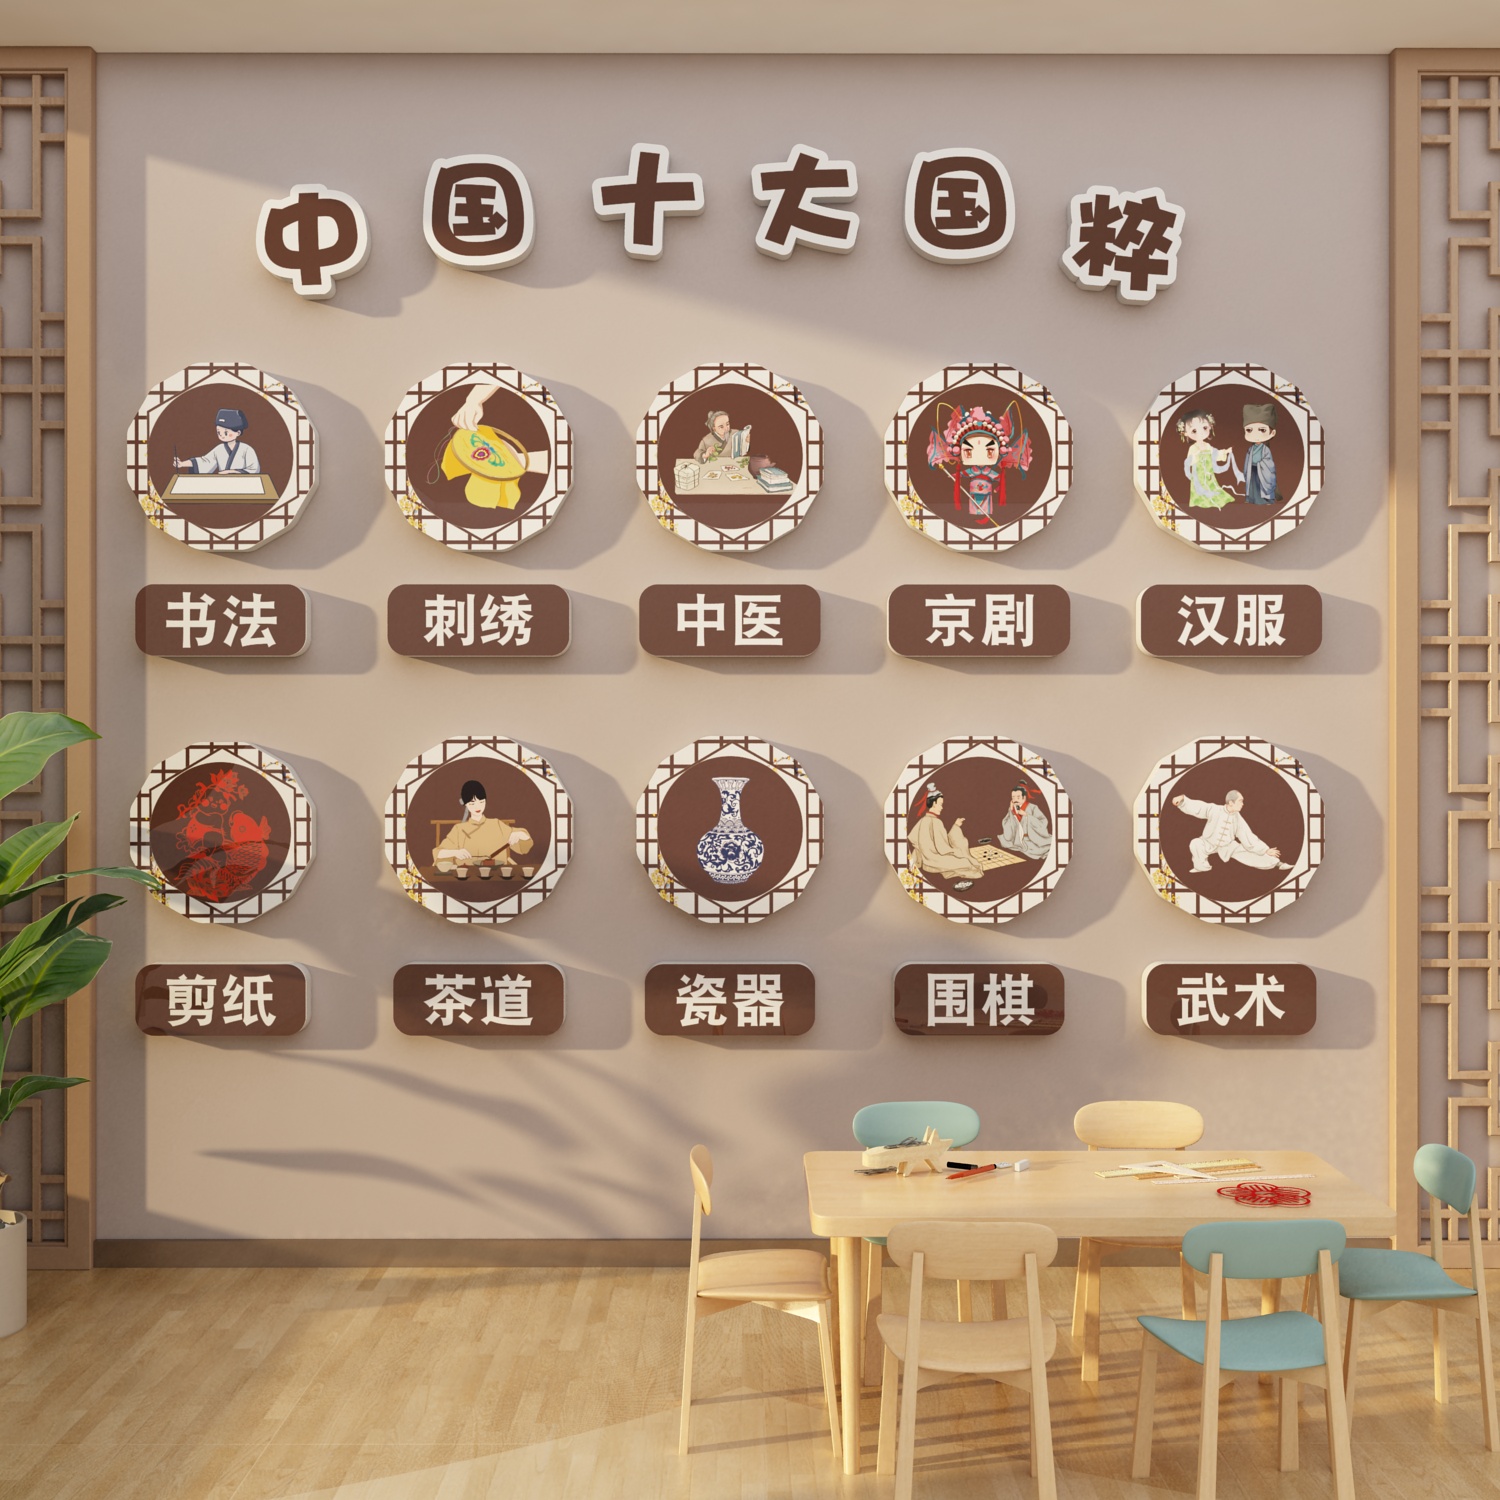 幼儿园传统文化墙贴面装饰走廊环创互动主题成品中国风学十大国粹